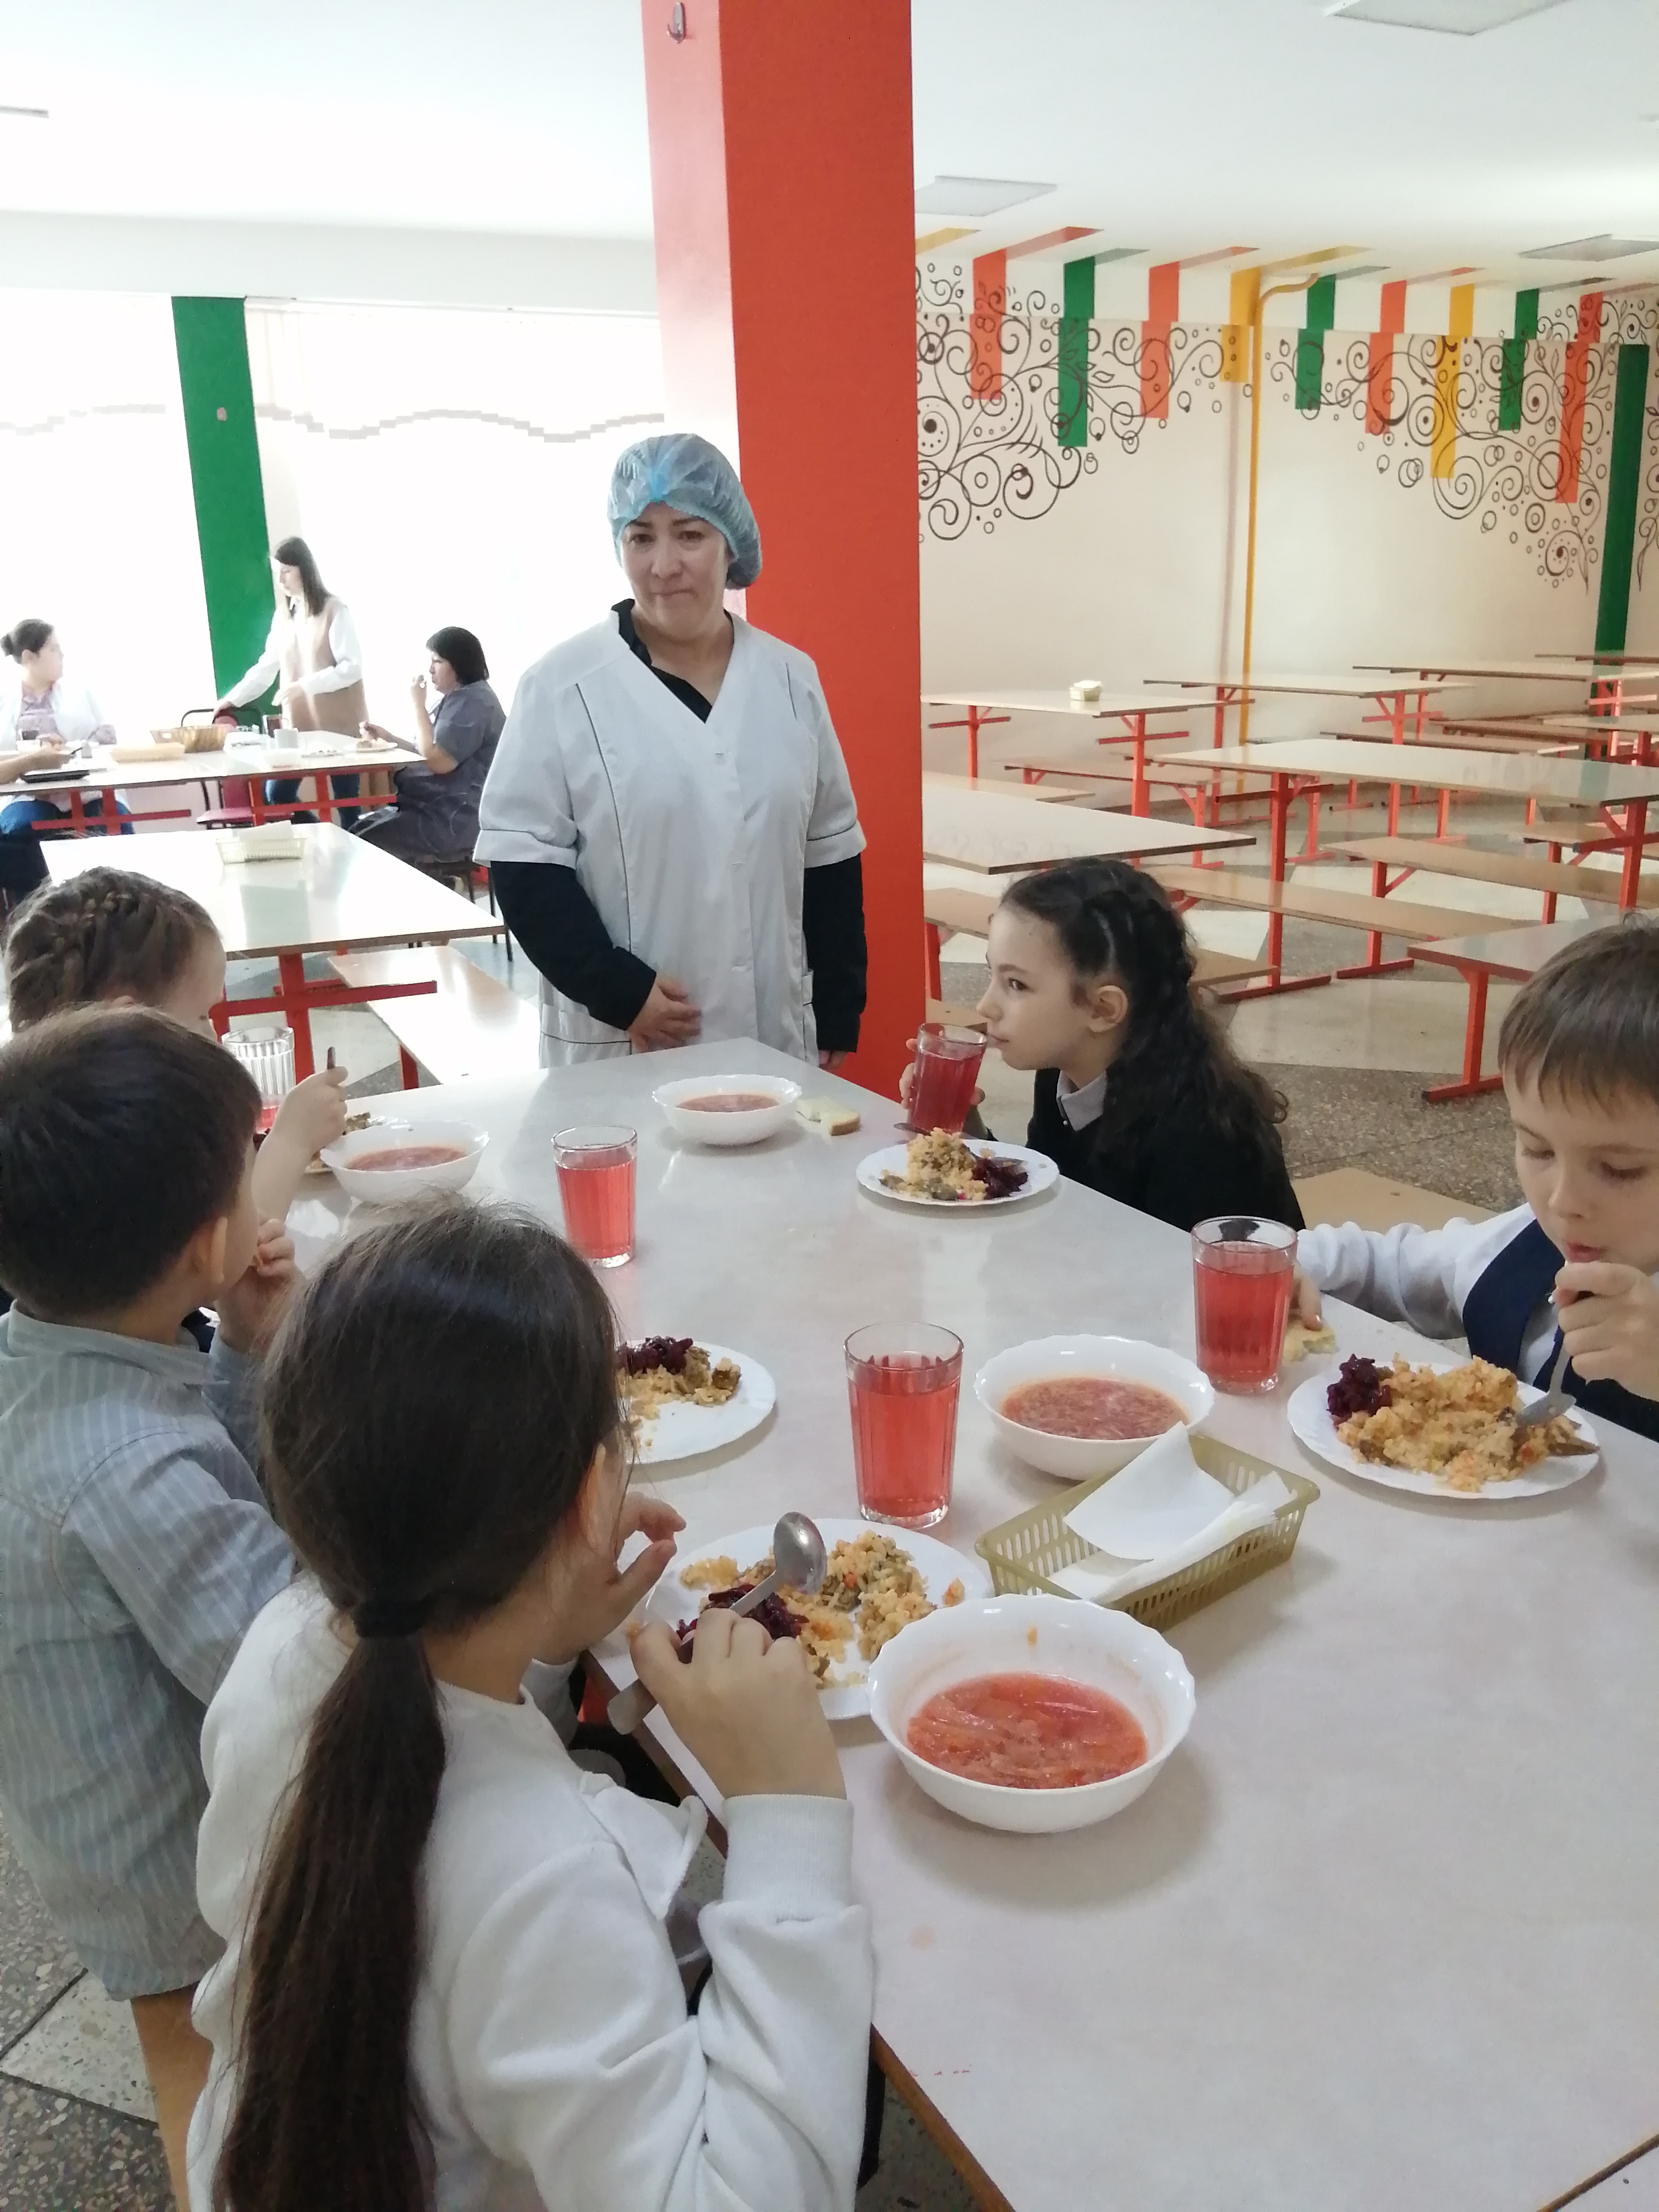 Проверка организации в школьной столовой горячего питания для обучающихся школы комиссией родительского контроля.